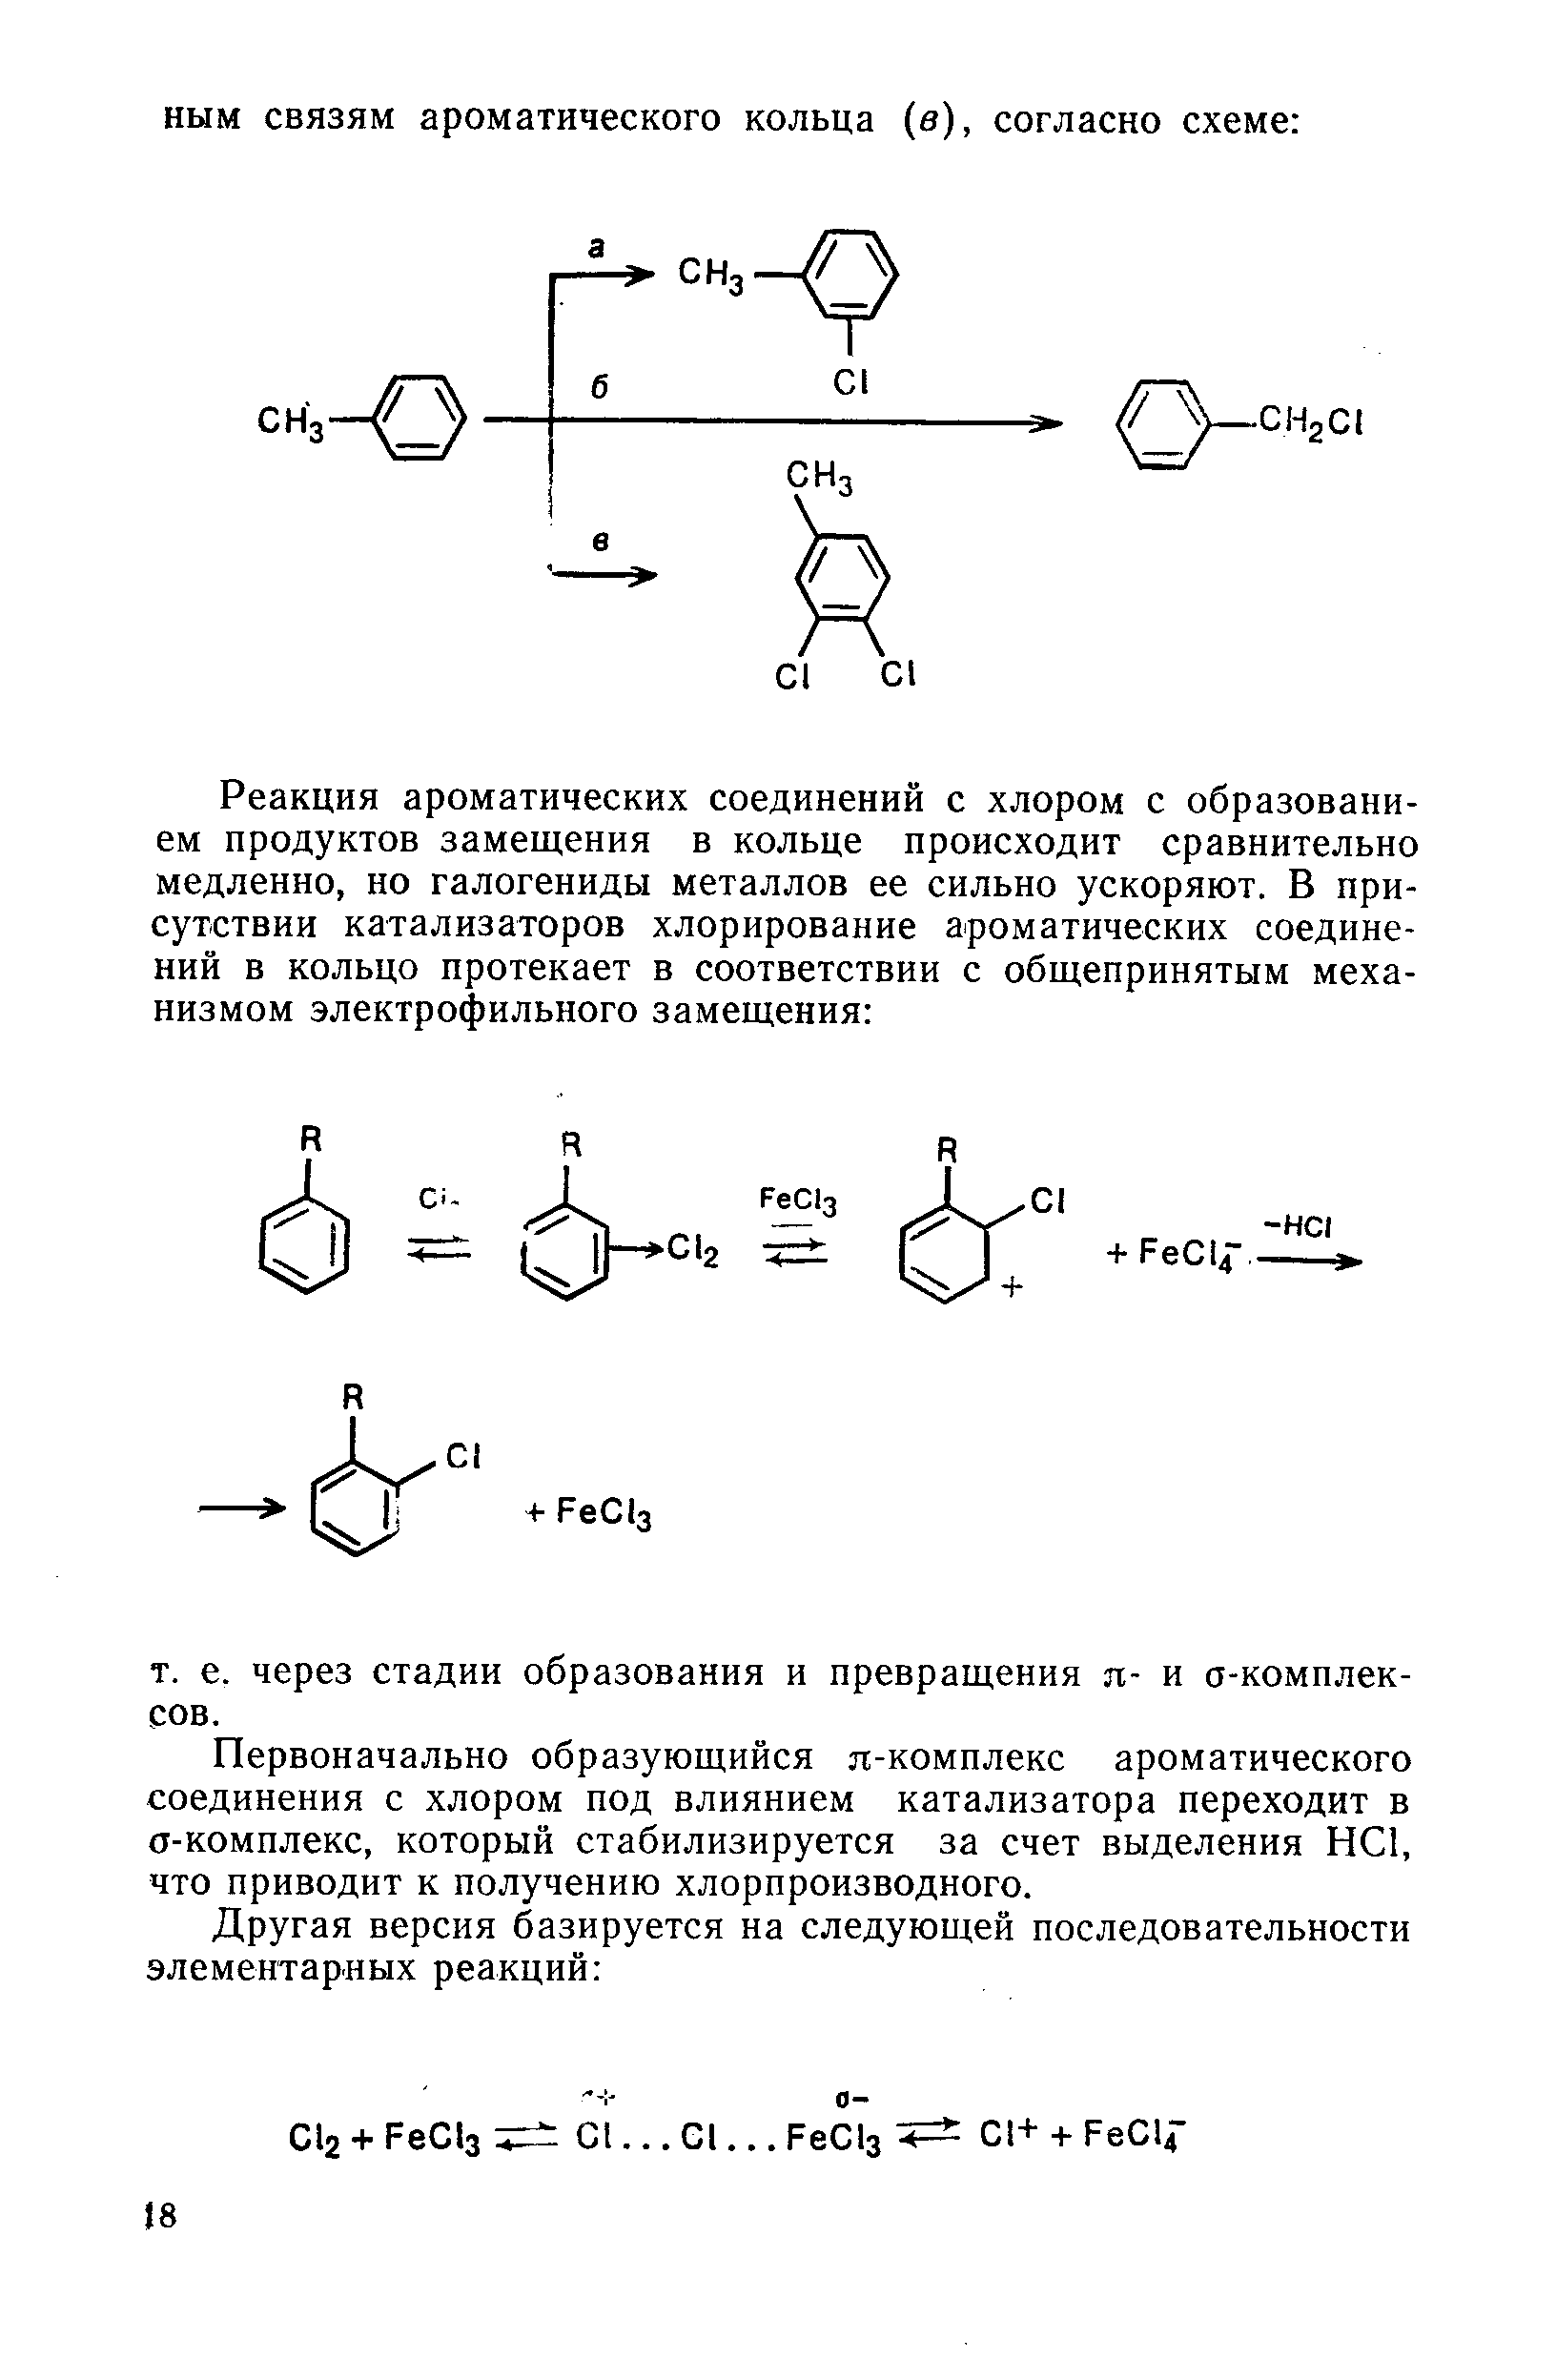 Первоначально образующийся я-комплекс ароматического соединения с хлором под влиянием катализатора переходит в о-комплекс, который стабилизируется за счет выделения НС1, что приводит к получению хлорпроизводного.